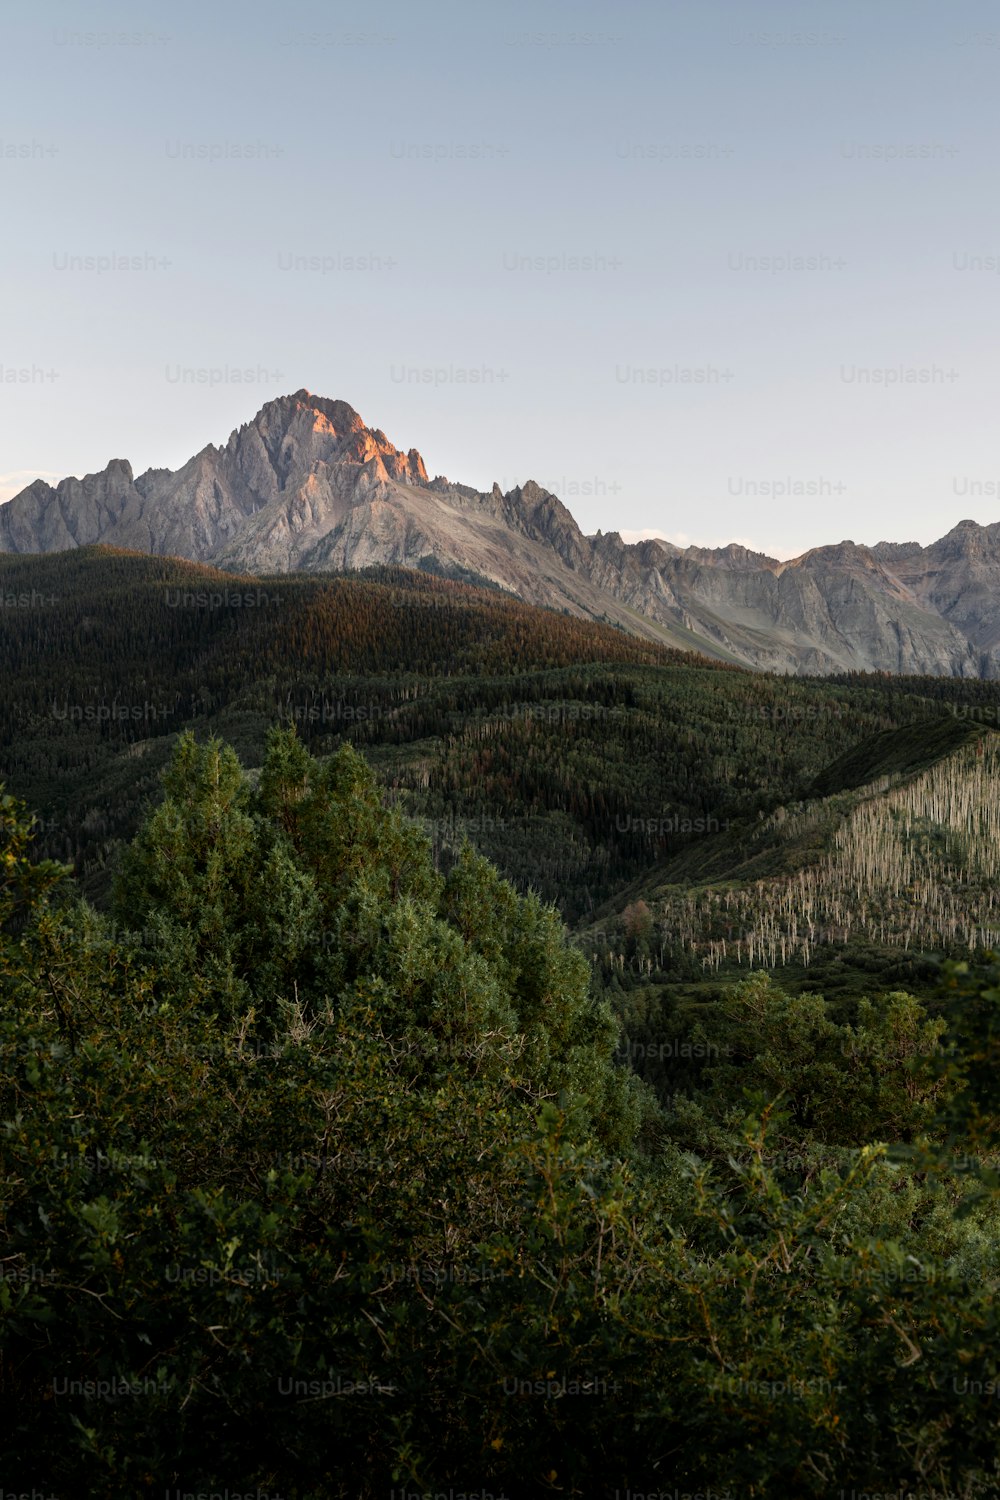 Una vista de una cadena montañosa desde la distancia